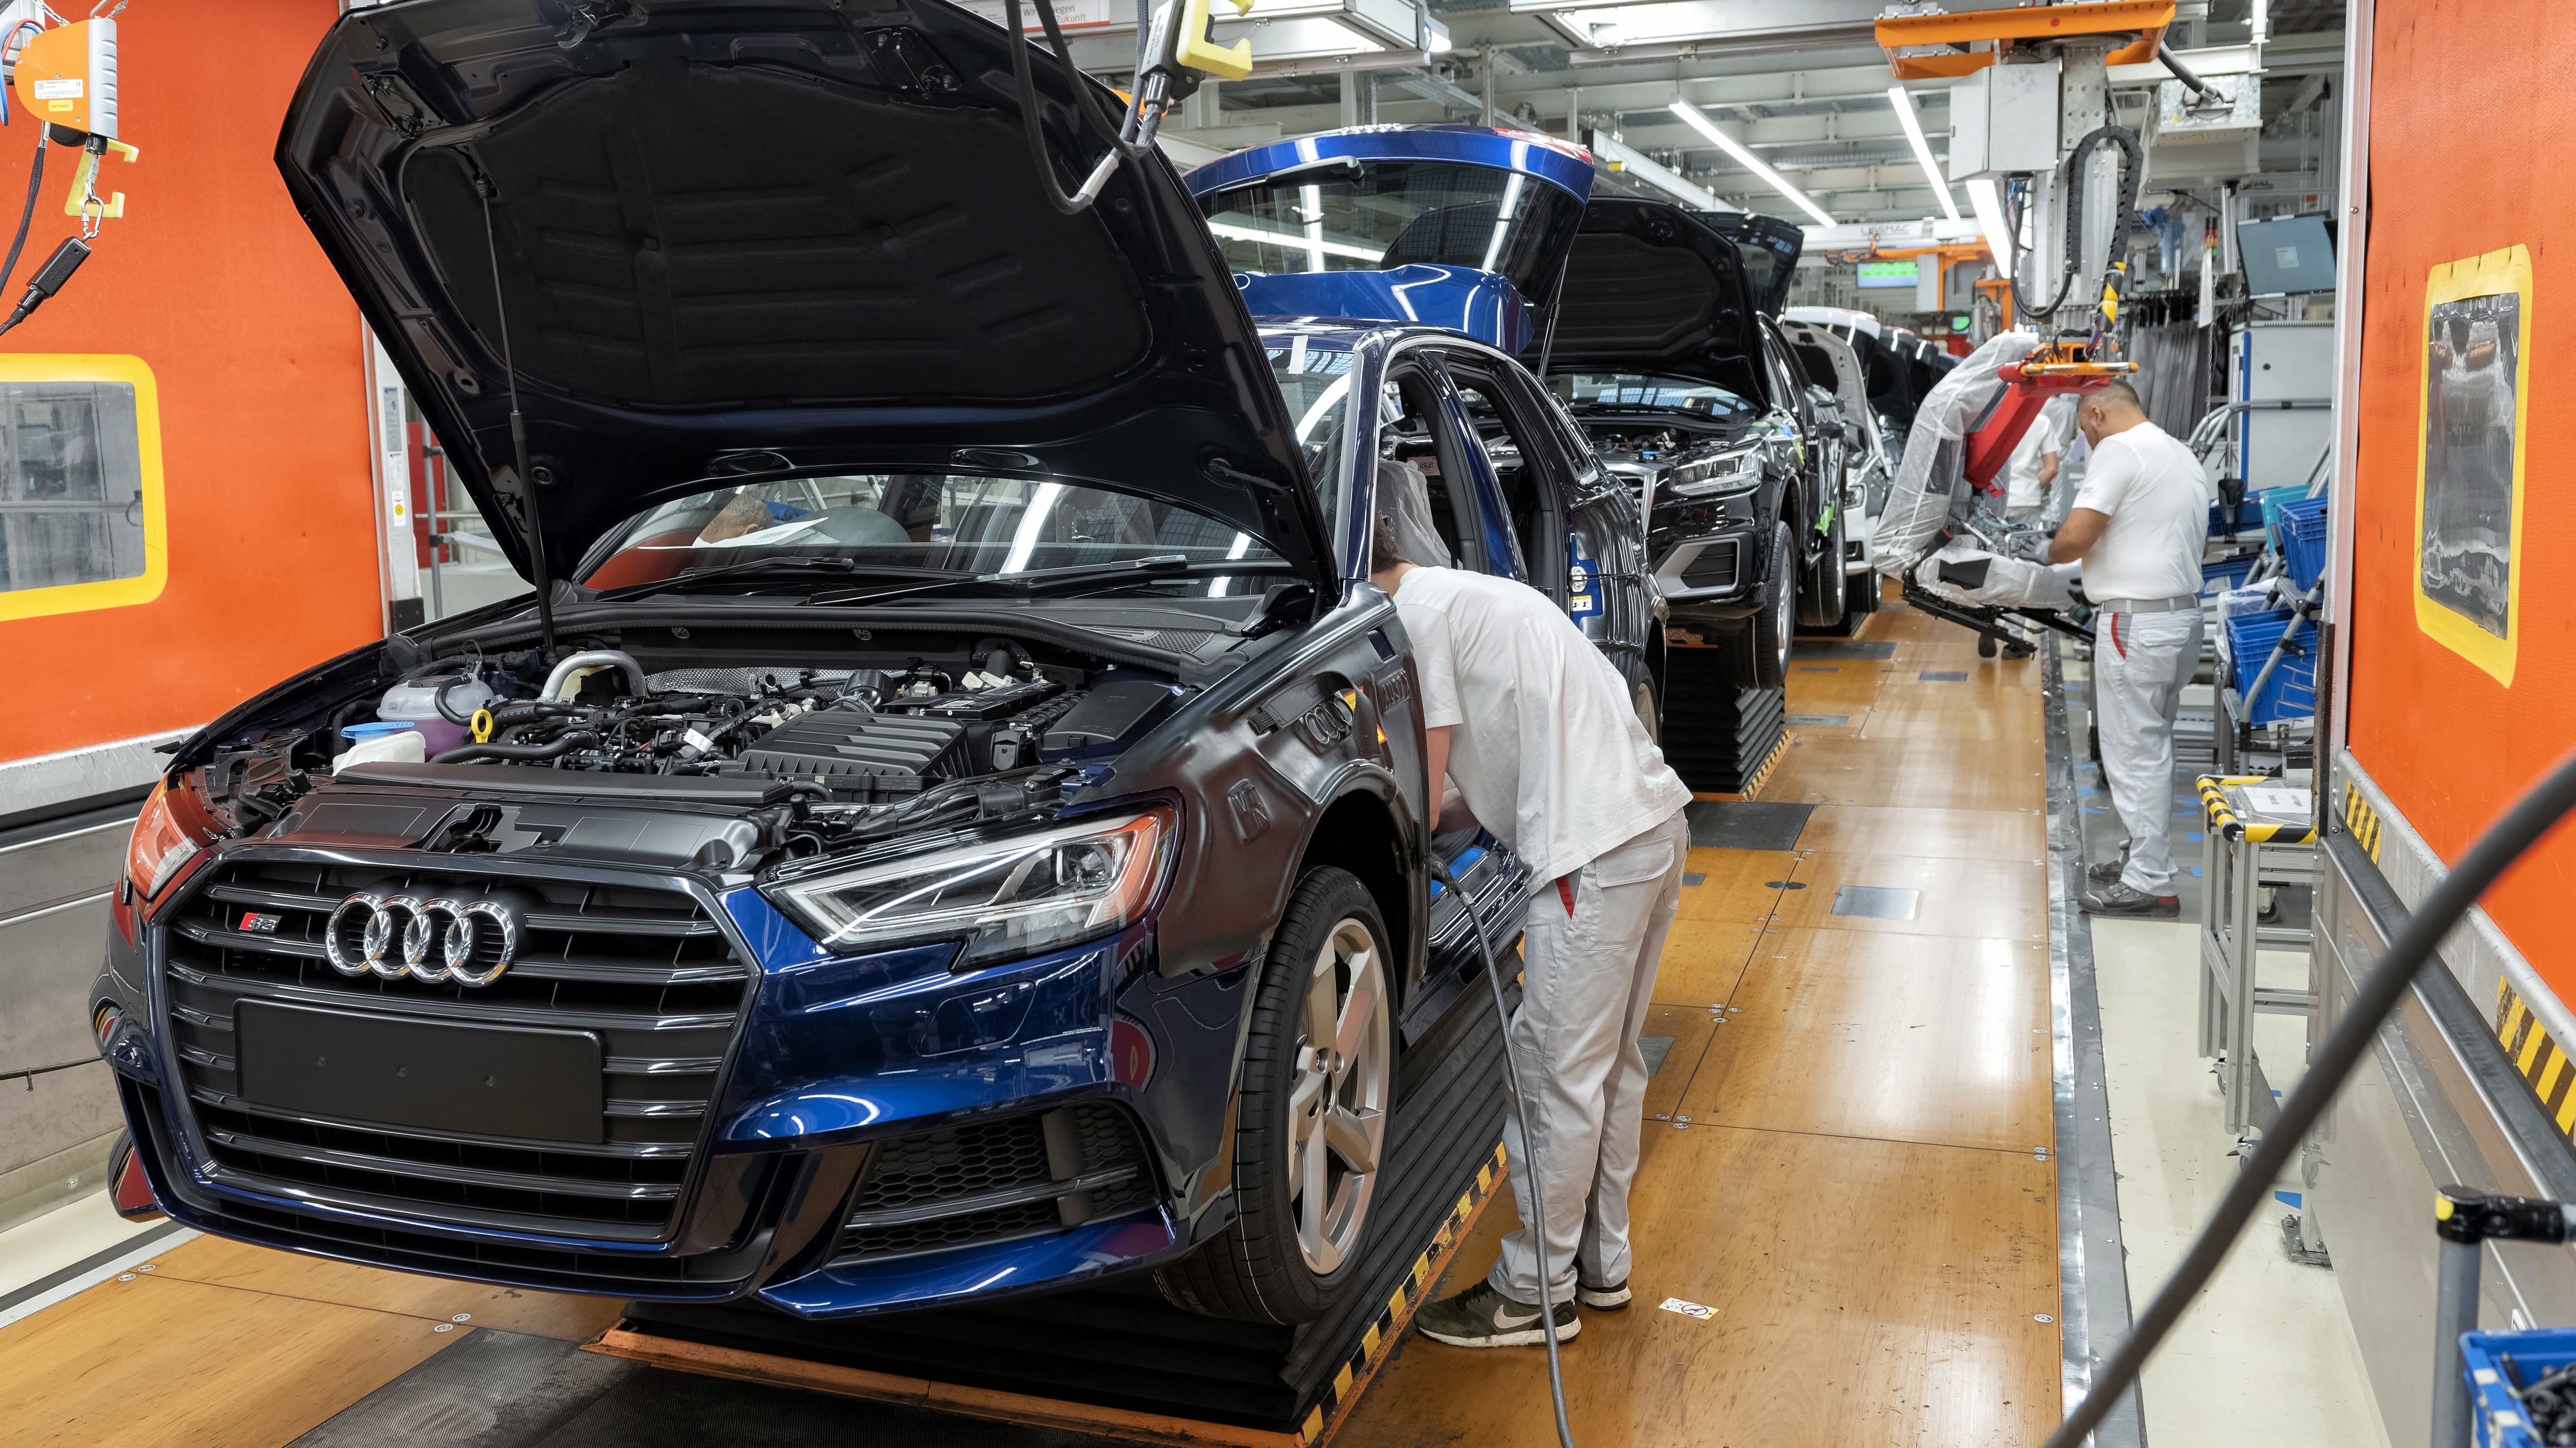 Audi Trotz Schwacher Auslastung Kein Weiterer Stellenabbau Br24